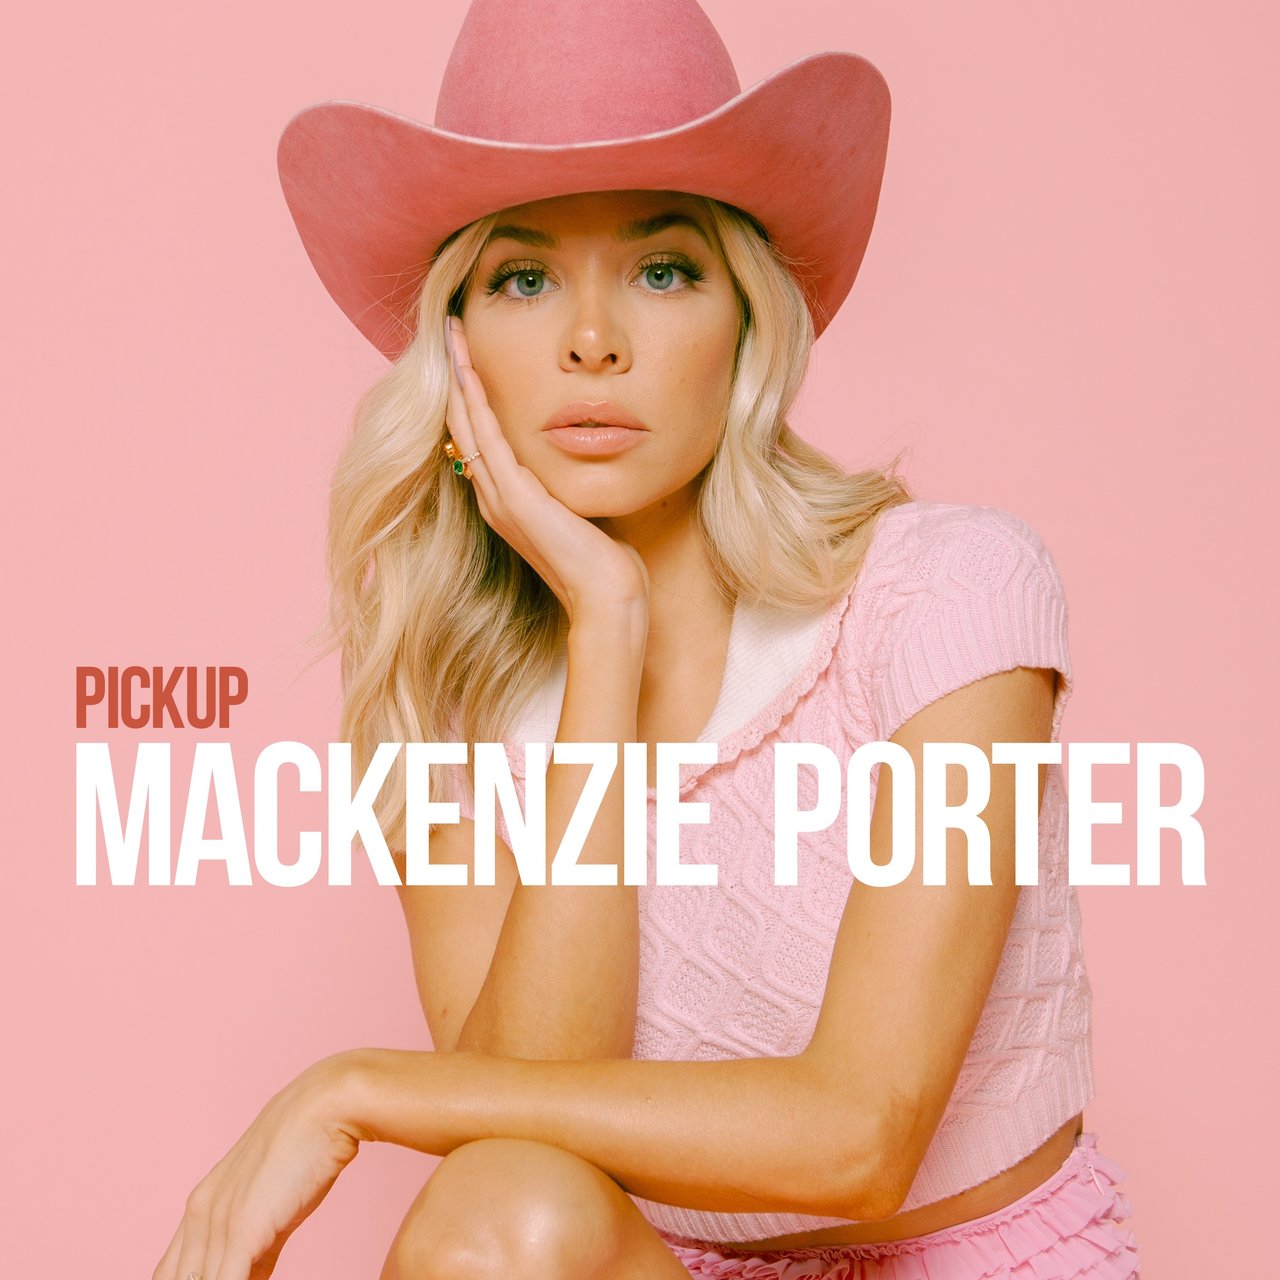 MacKenzie Porter Pickup cover artwork